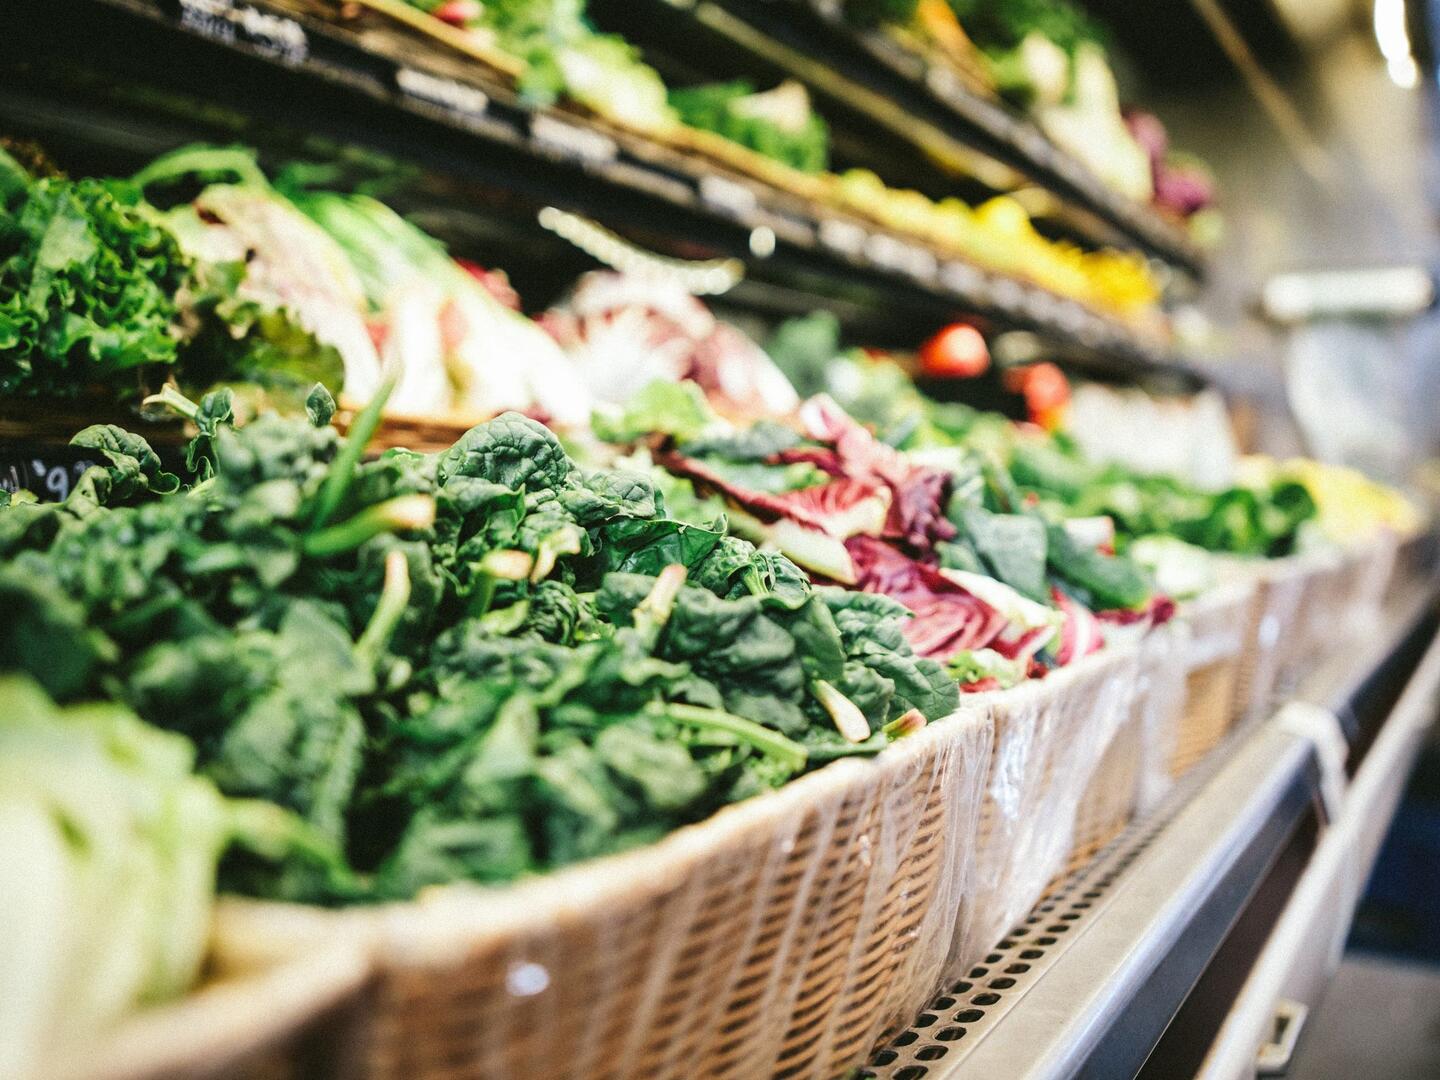 Comprar Verduras, hortalizas y salteados - Supermercados DIA